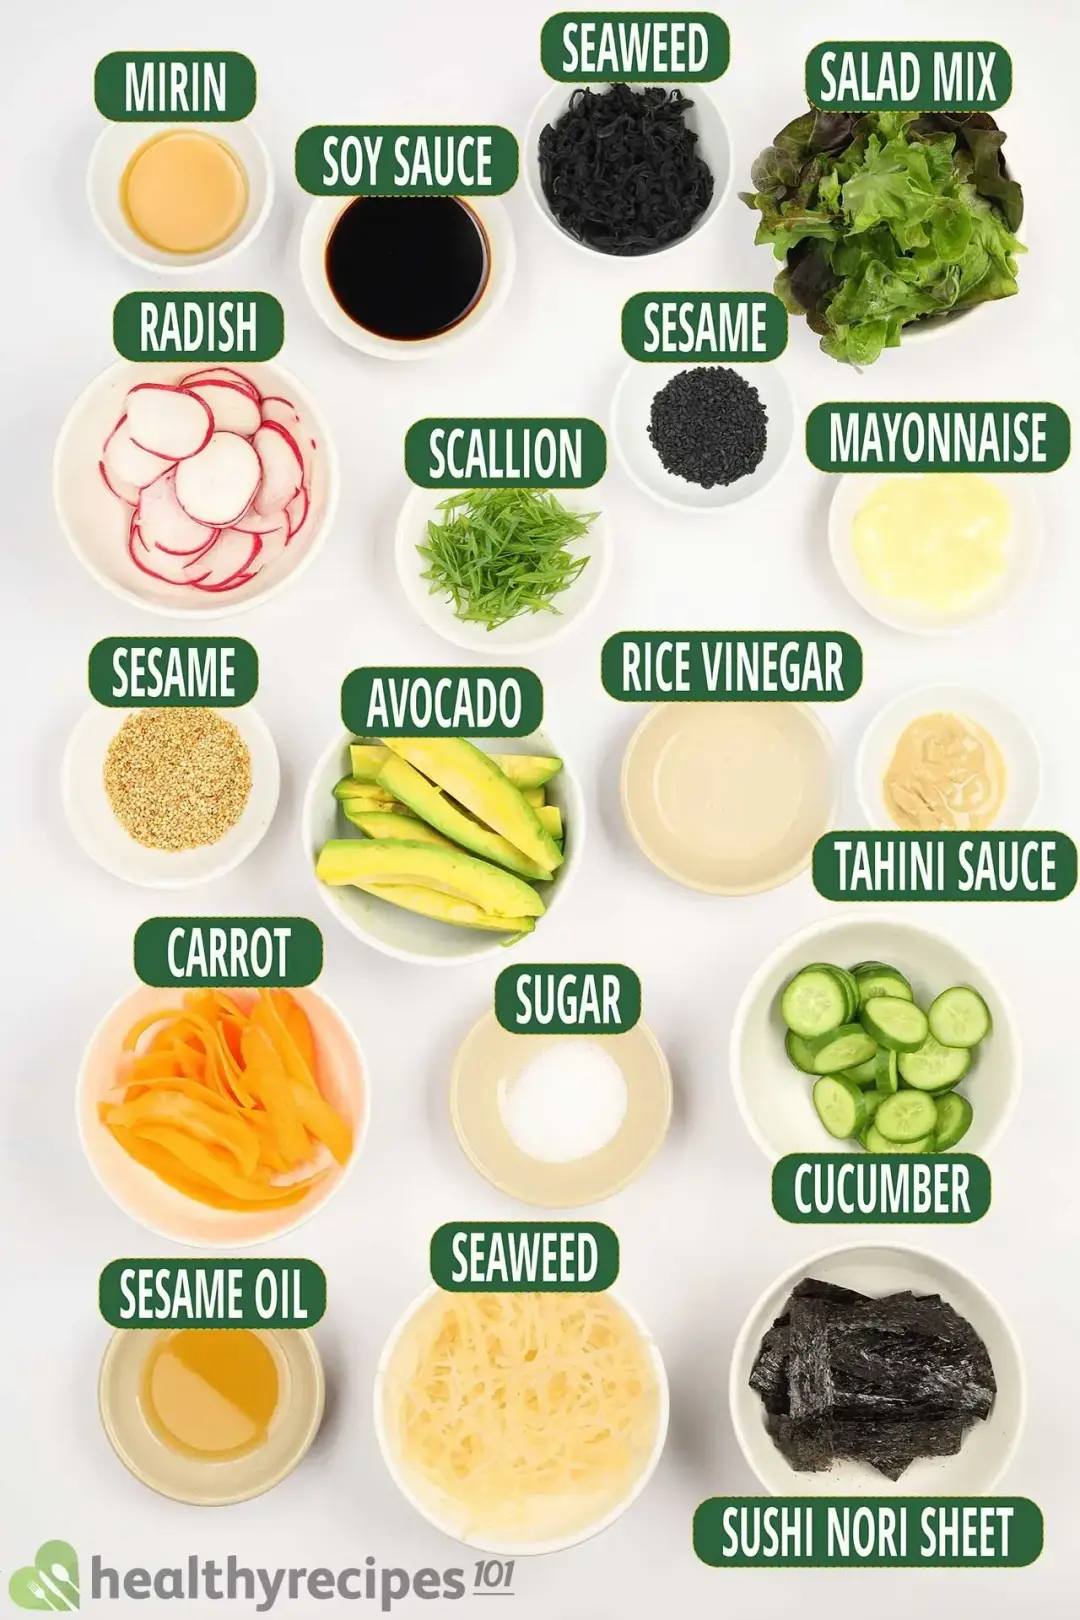 Ingredients for Seaweed Salad